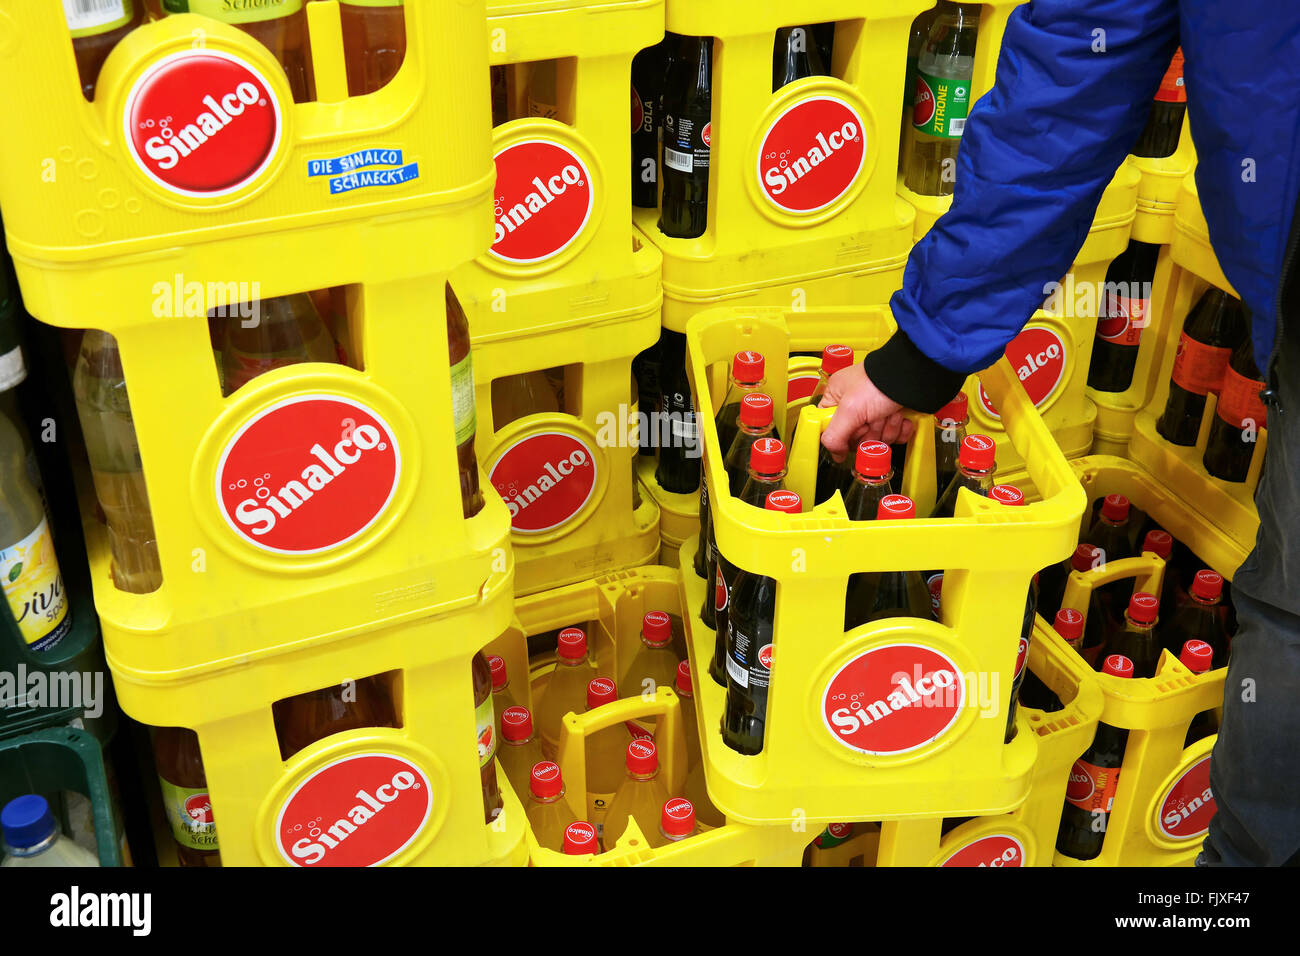 Sinalco ist eine beliebte Marke für alkoholfreie Getränke Stockfoto